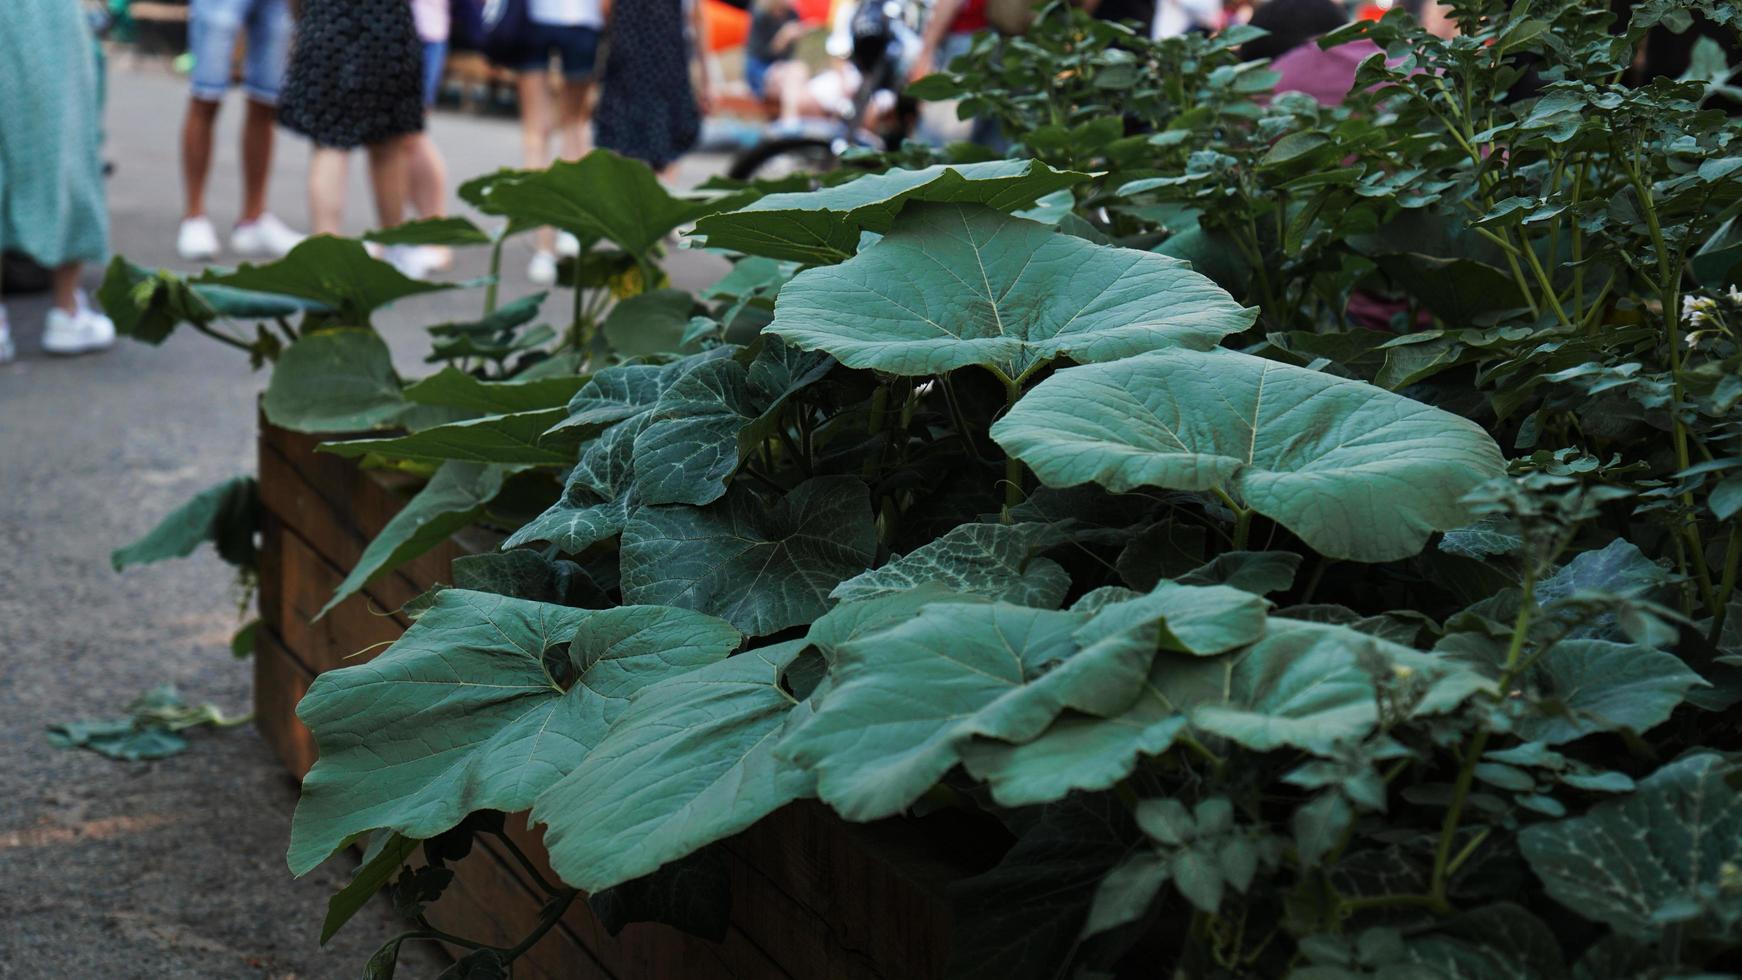 Gemeinschaftsgartenarbeit. urbaner Gemüsegarten an einem öffentlichen Ort foto